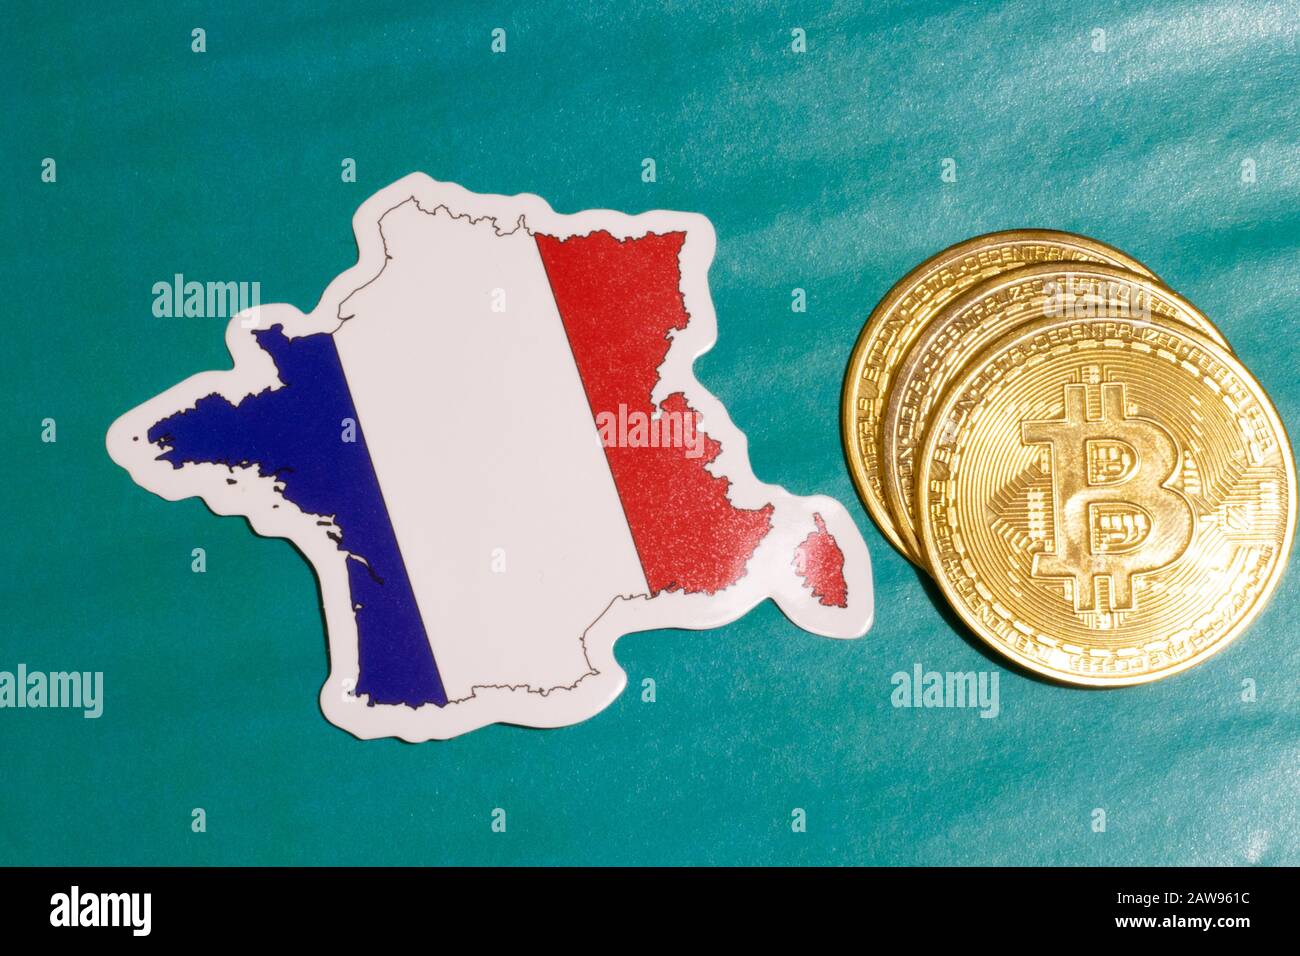 Drapeau de France avec Bitcoin plat pour illustration. Concept de loi btc Cryptocurrency Banque D'Images